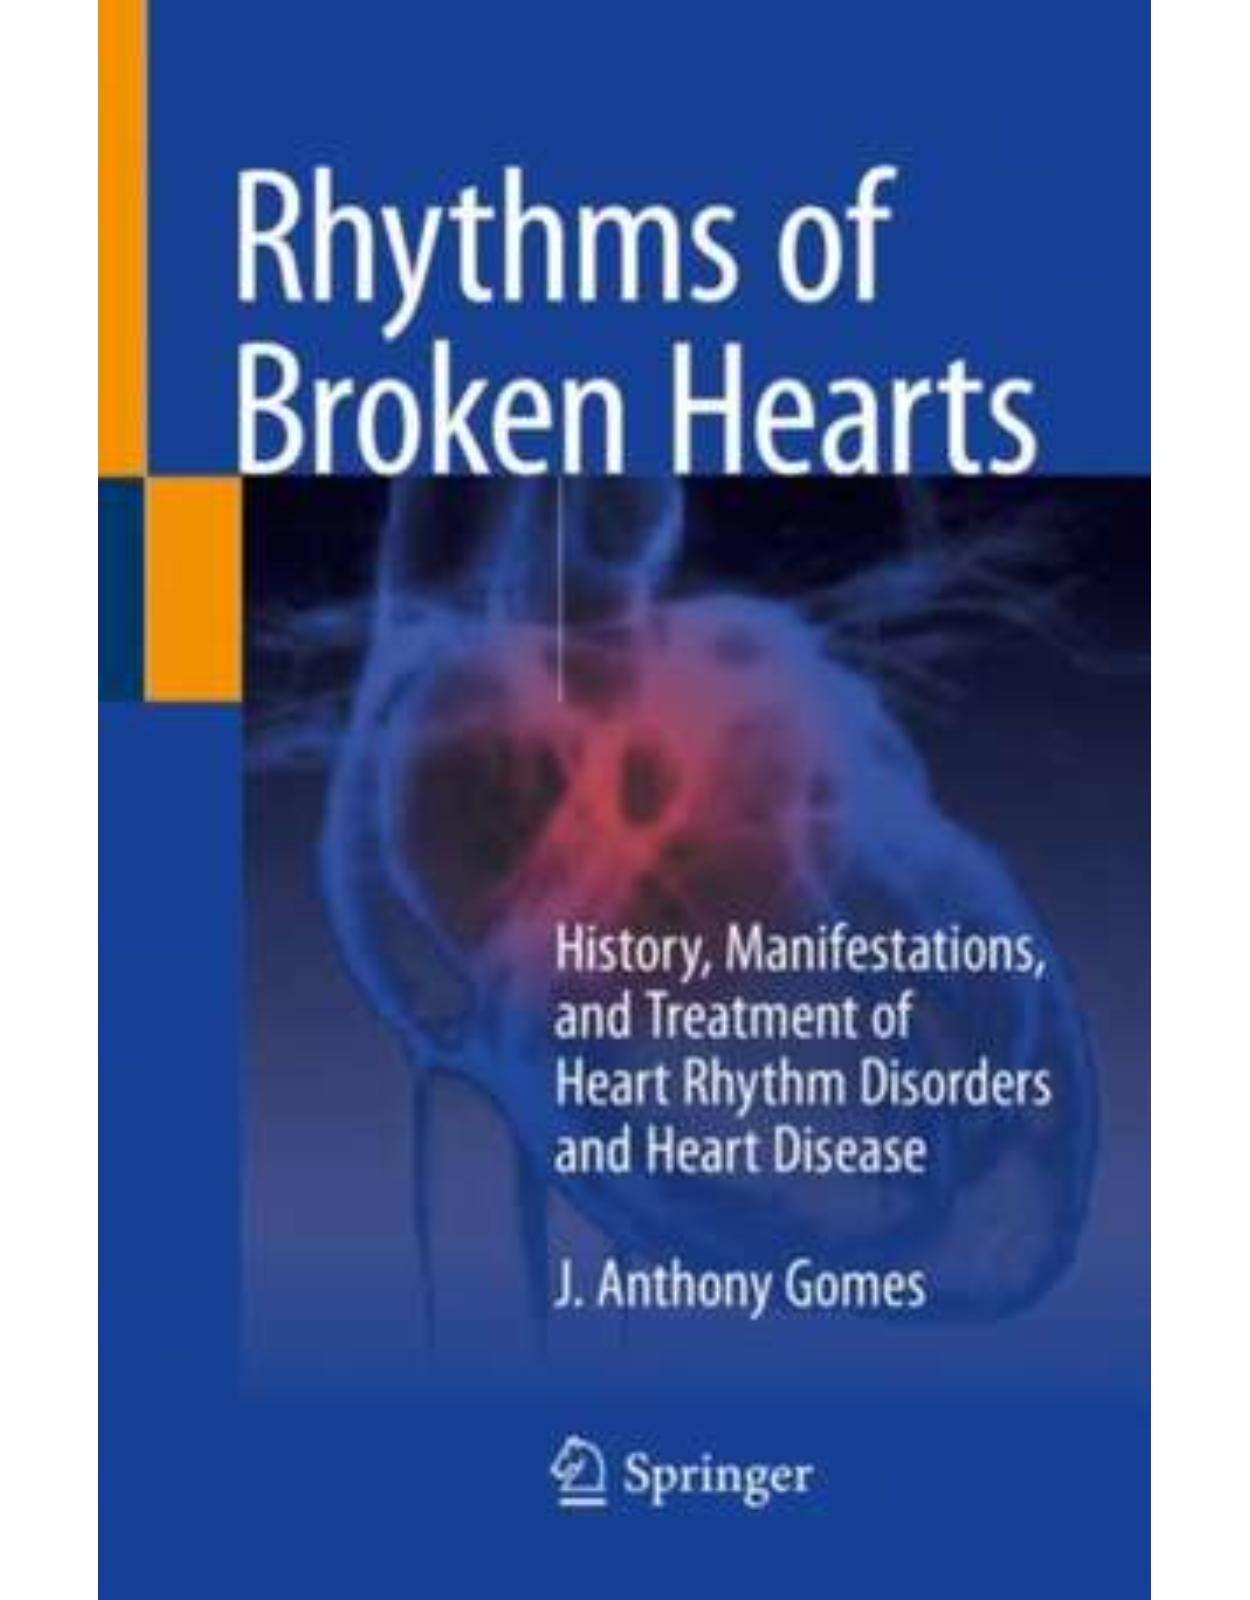 Rhythms of Broken Hearts